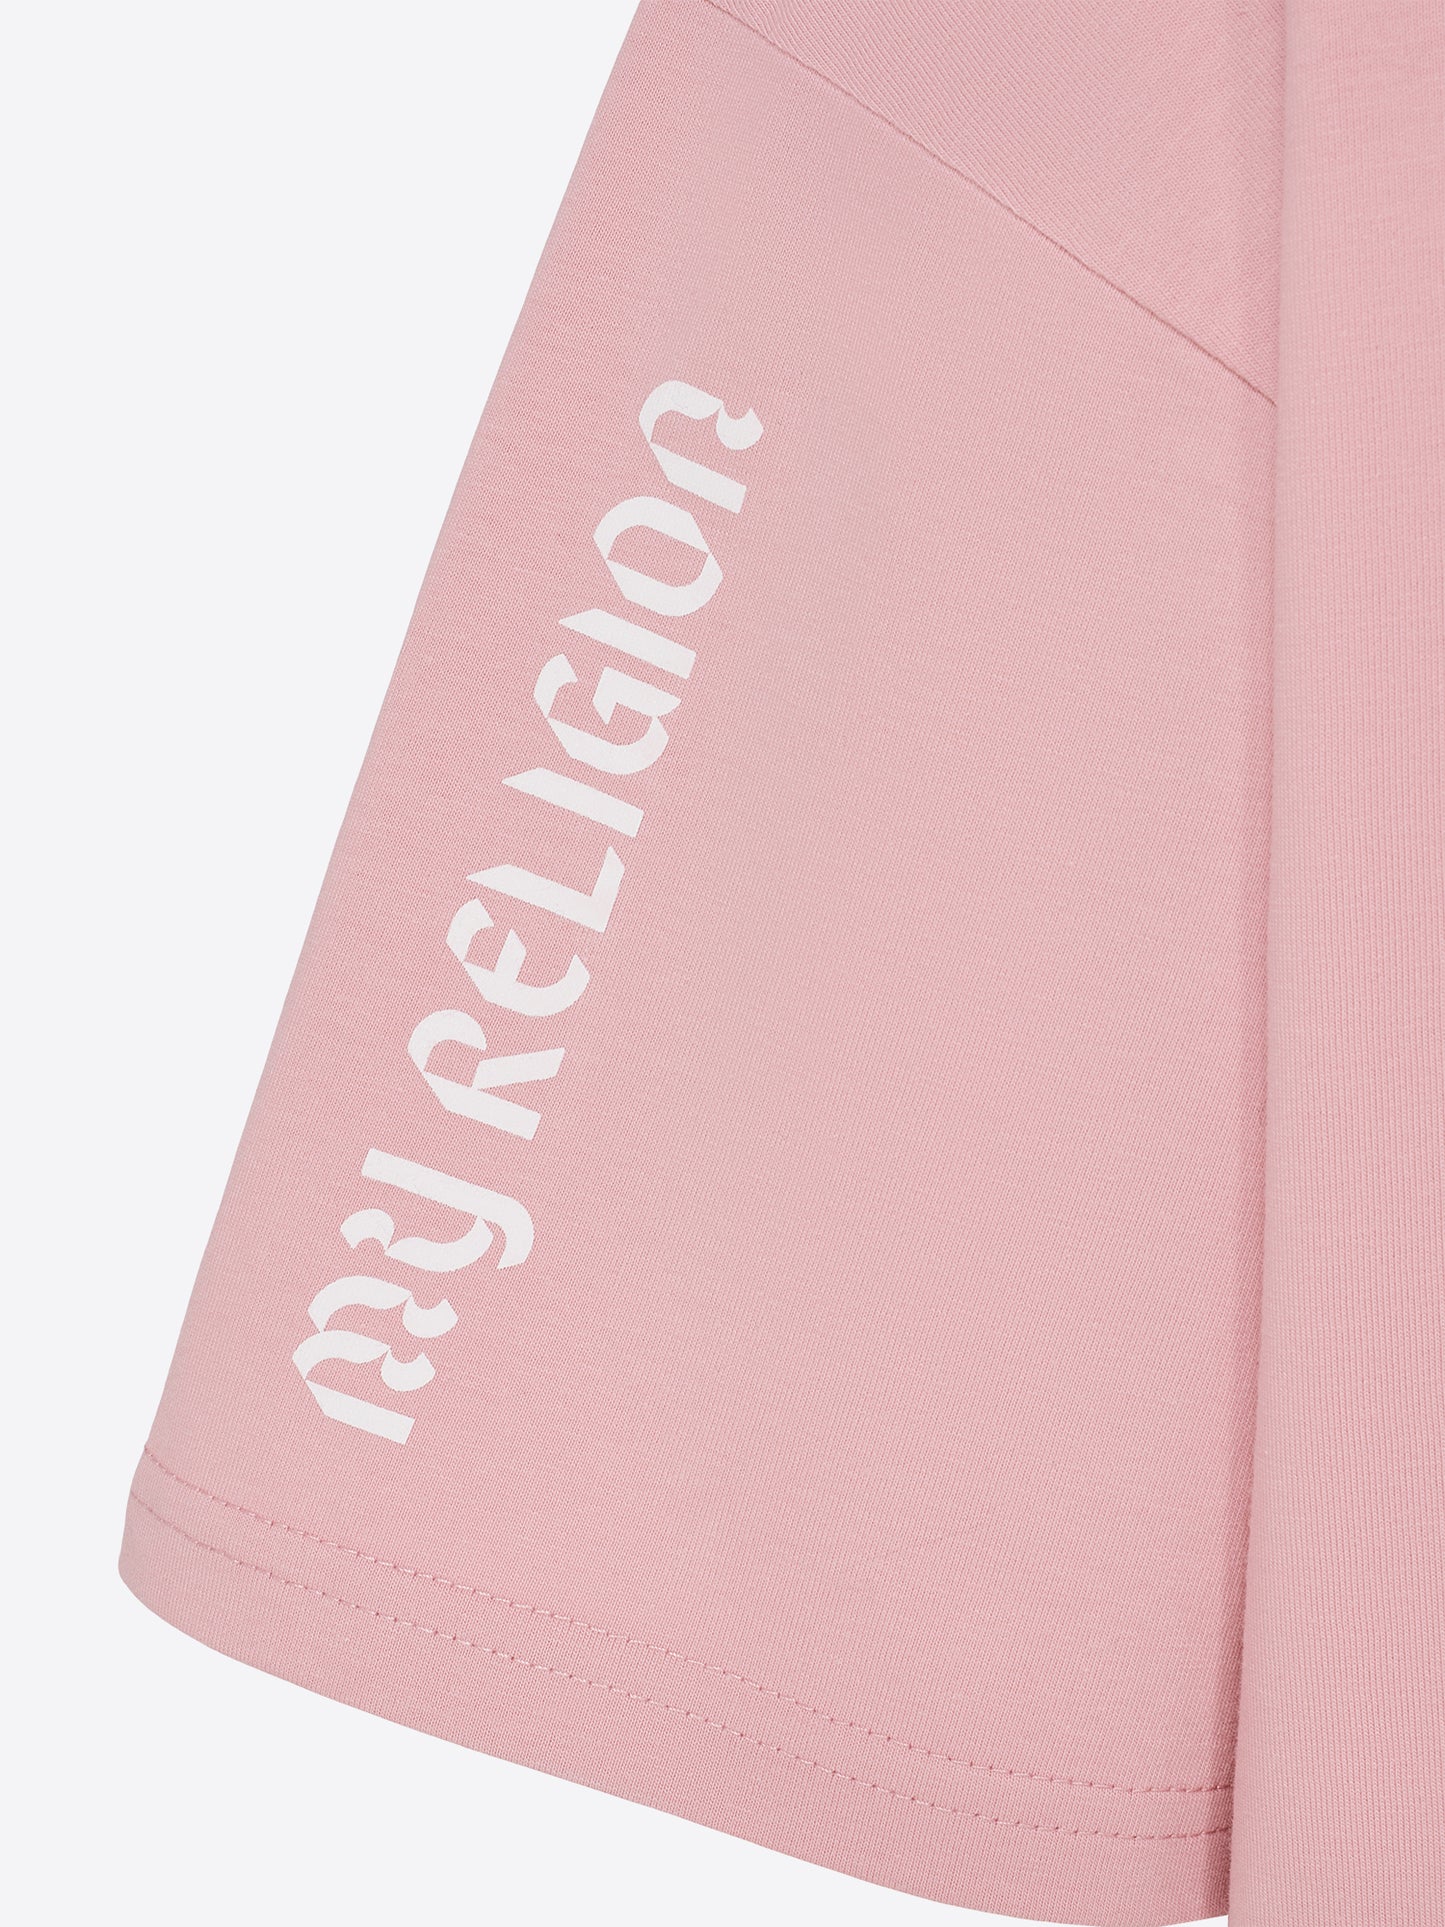 Limited ALADAG - MY RELIGION - Shirt Rosé